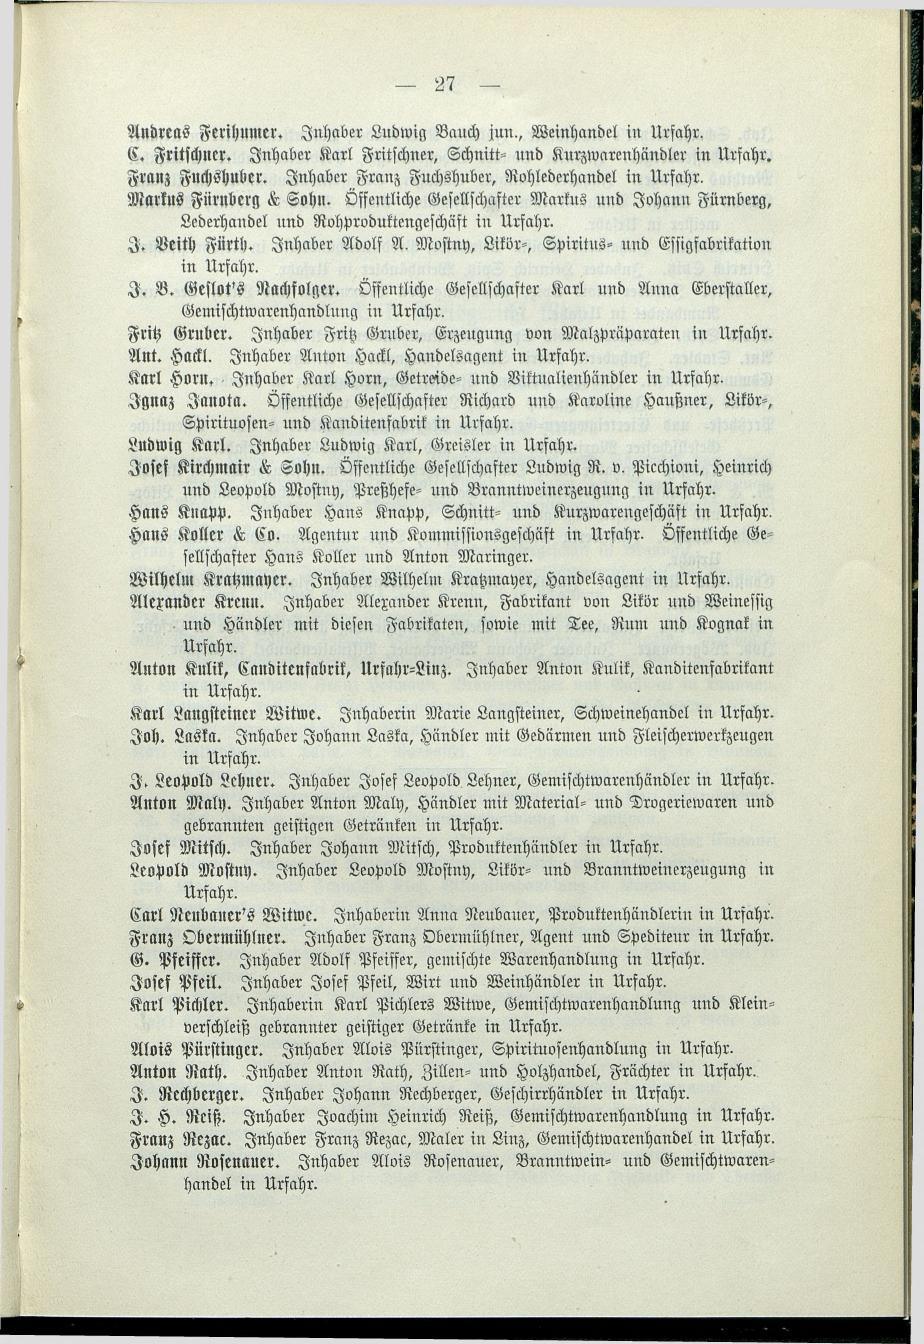 Verzeichnis der protokollierten Firmen und Genossenschaften in Oberösterreich 1908 - Page 31